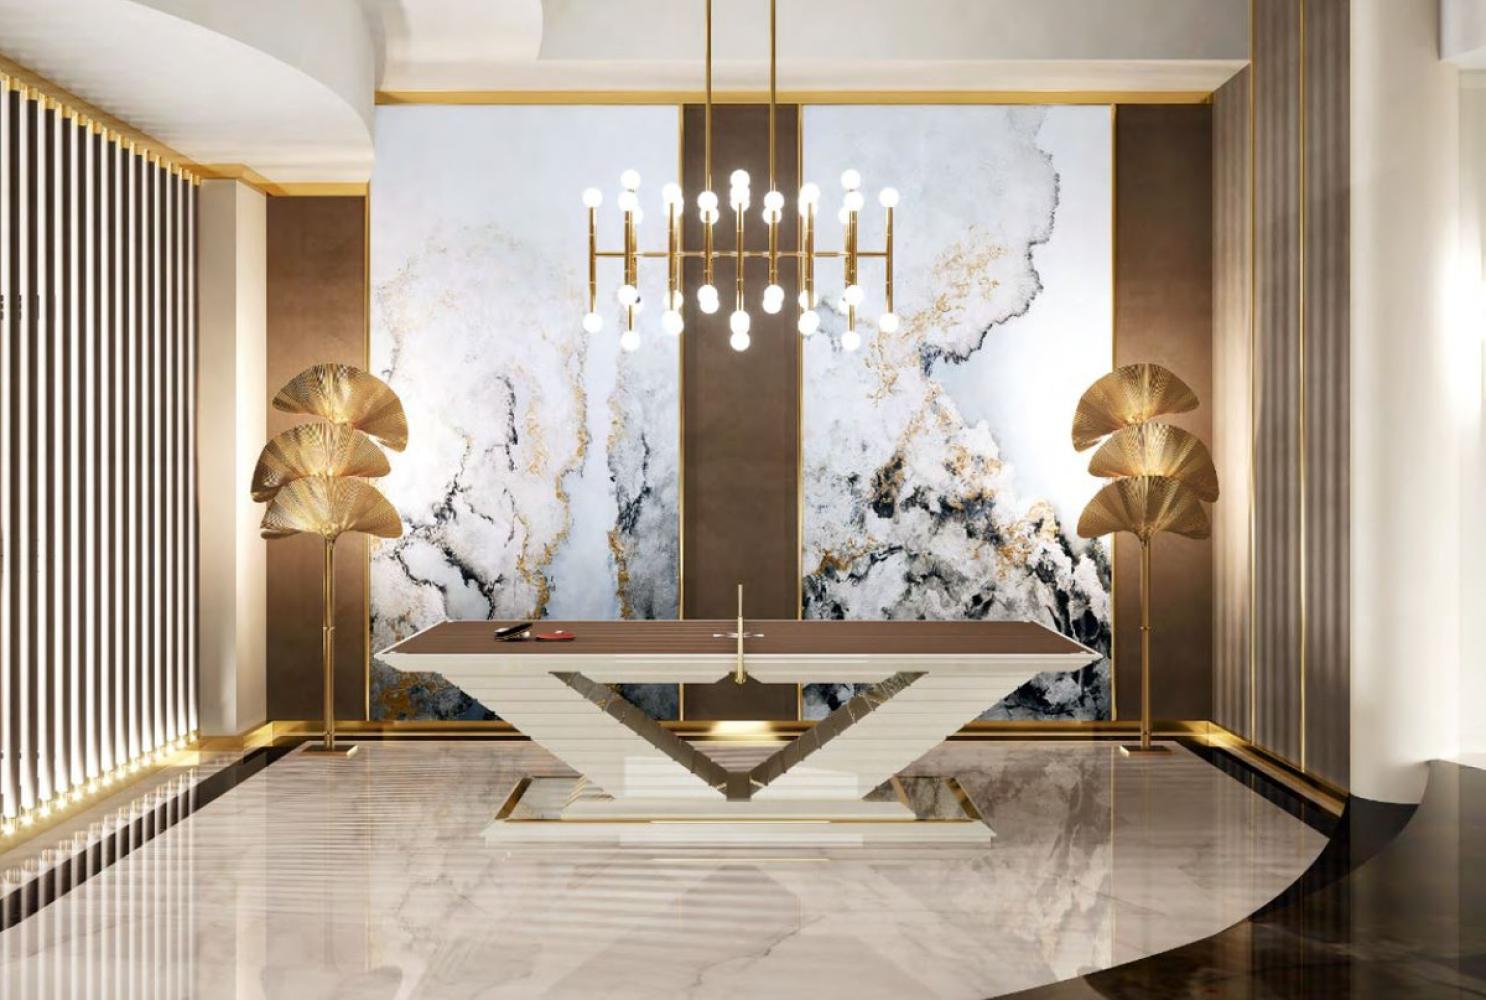 Casa Padrino Luxus Designer Indoor Tischtennisplatte Braun / Creme / Gold 274 x 152,5 x H. 76 cm - Hotel Kollektion - Luxus Qualität Bild 1